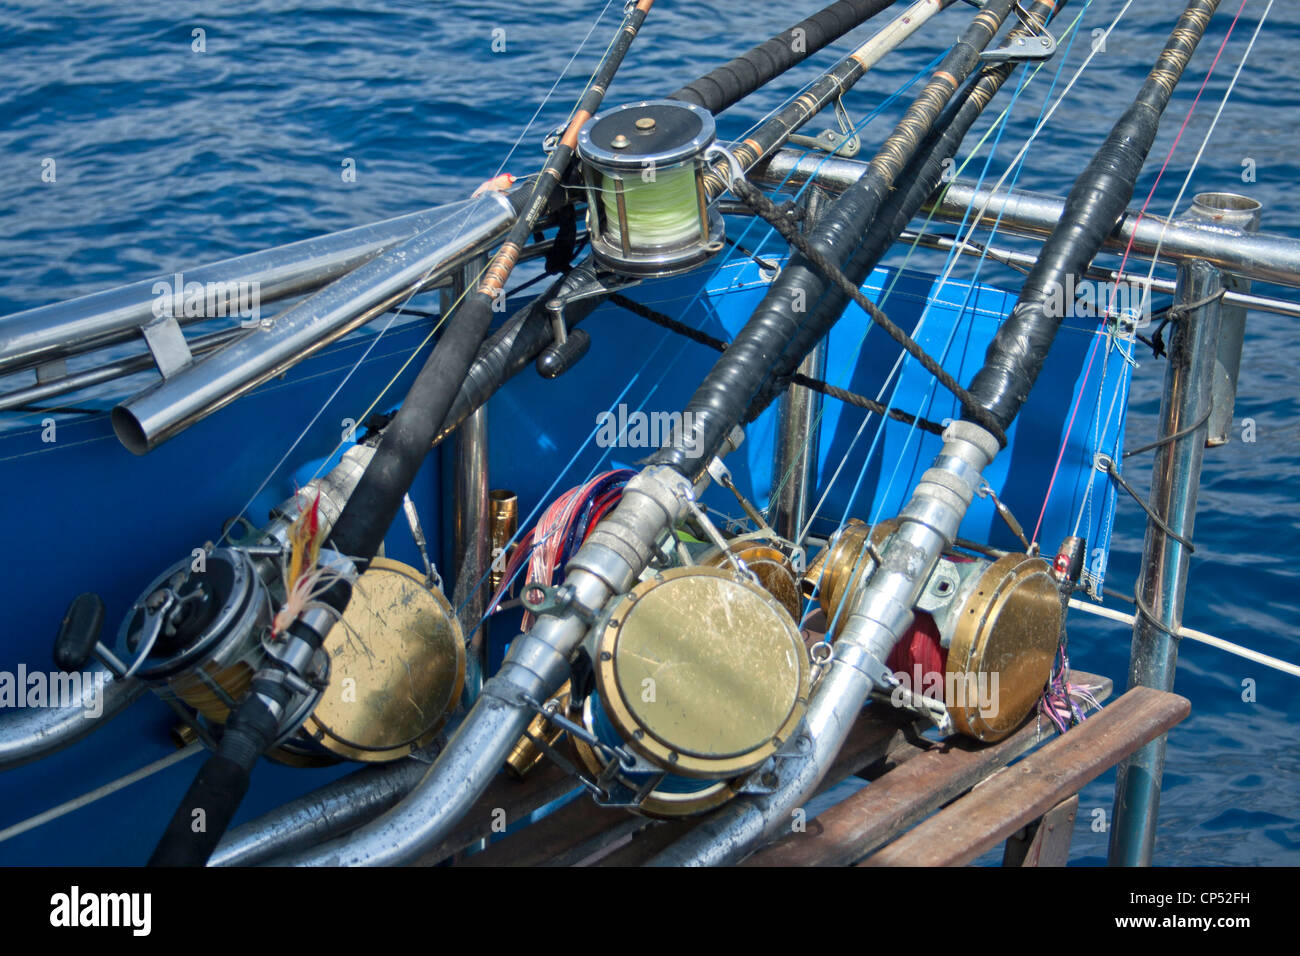 Big game canne da pesca fotografato durante un viaggio di pesca off Tenerife, Isole Canarie, Spagna. Foto Stock